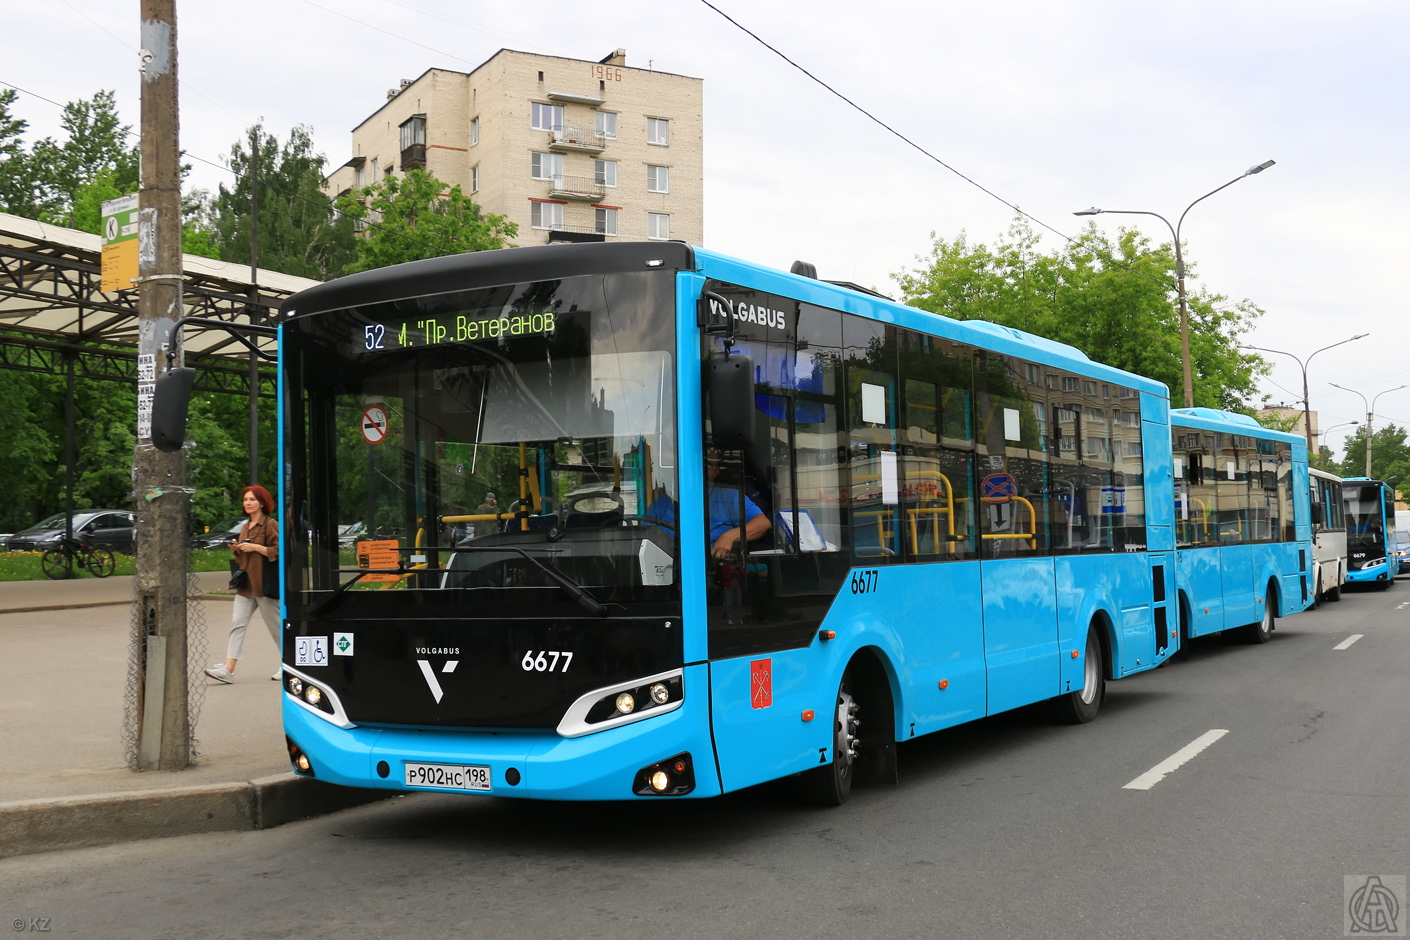 Sankt Peterburgas, Volgabus-4298.G4 (LNG) Nr. 6677